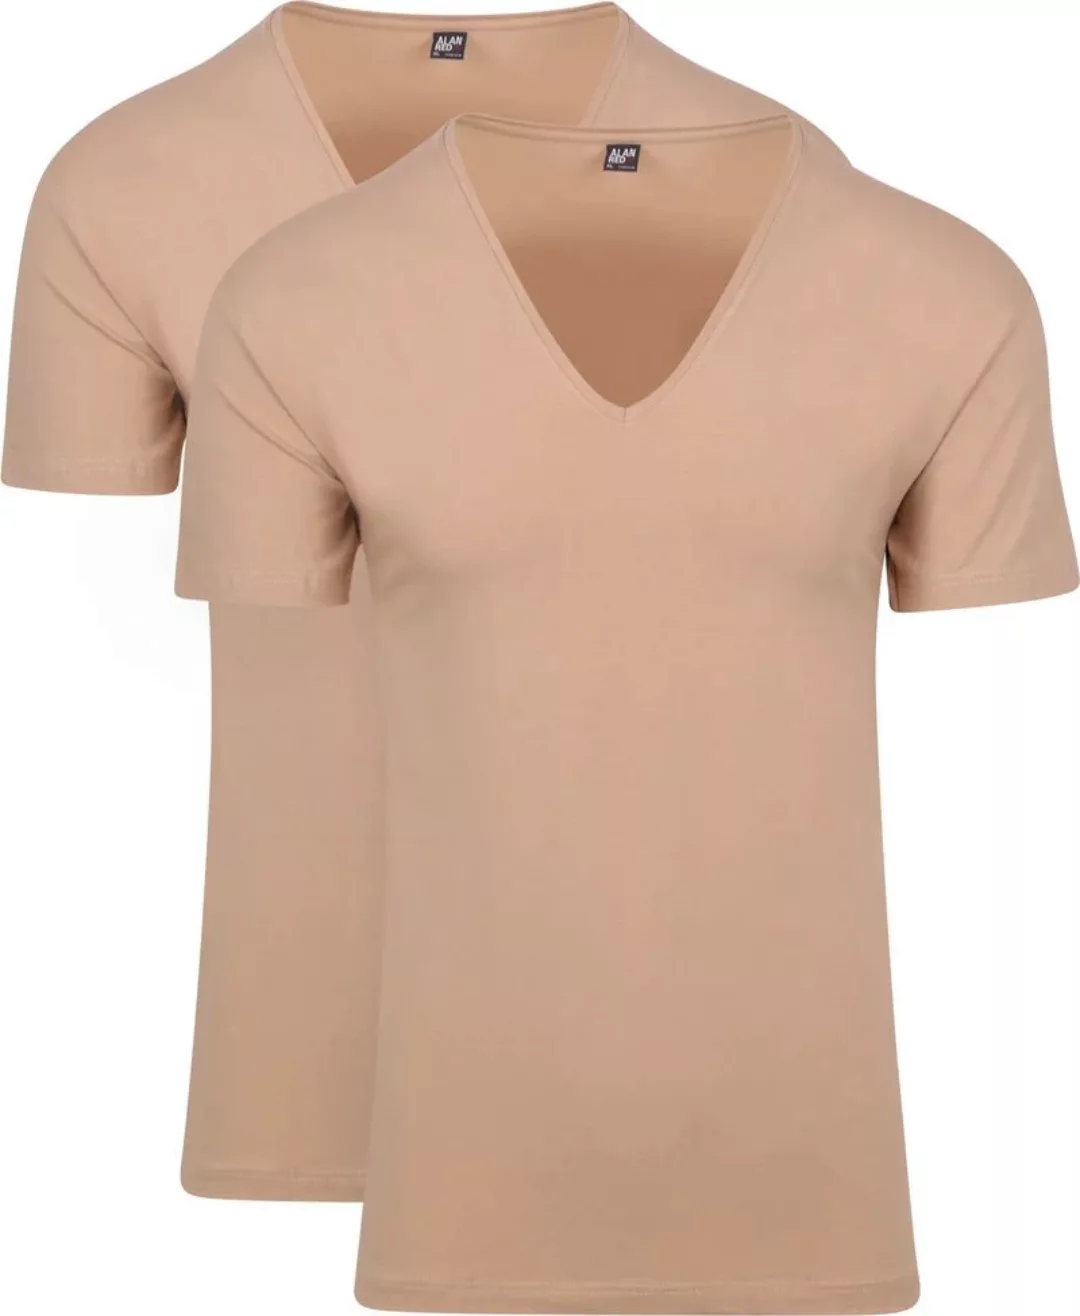 Alan Red Stretch V-Neck T-Shirt Beige 2er-Pack - Größe XXL günstig online kaufen